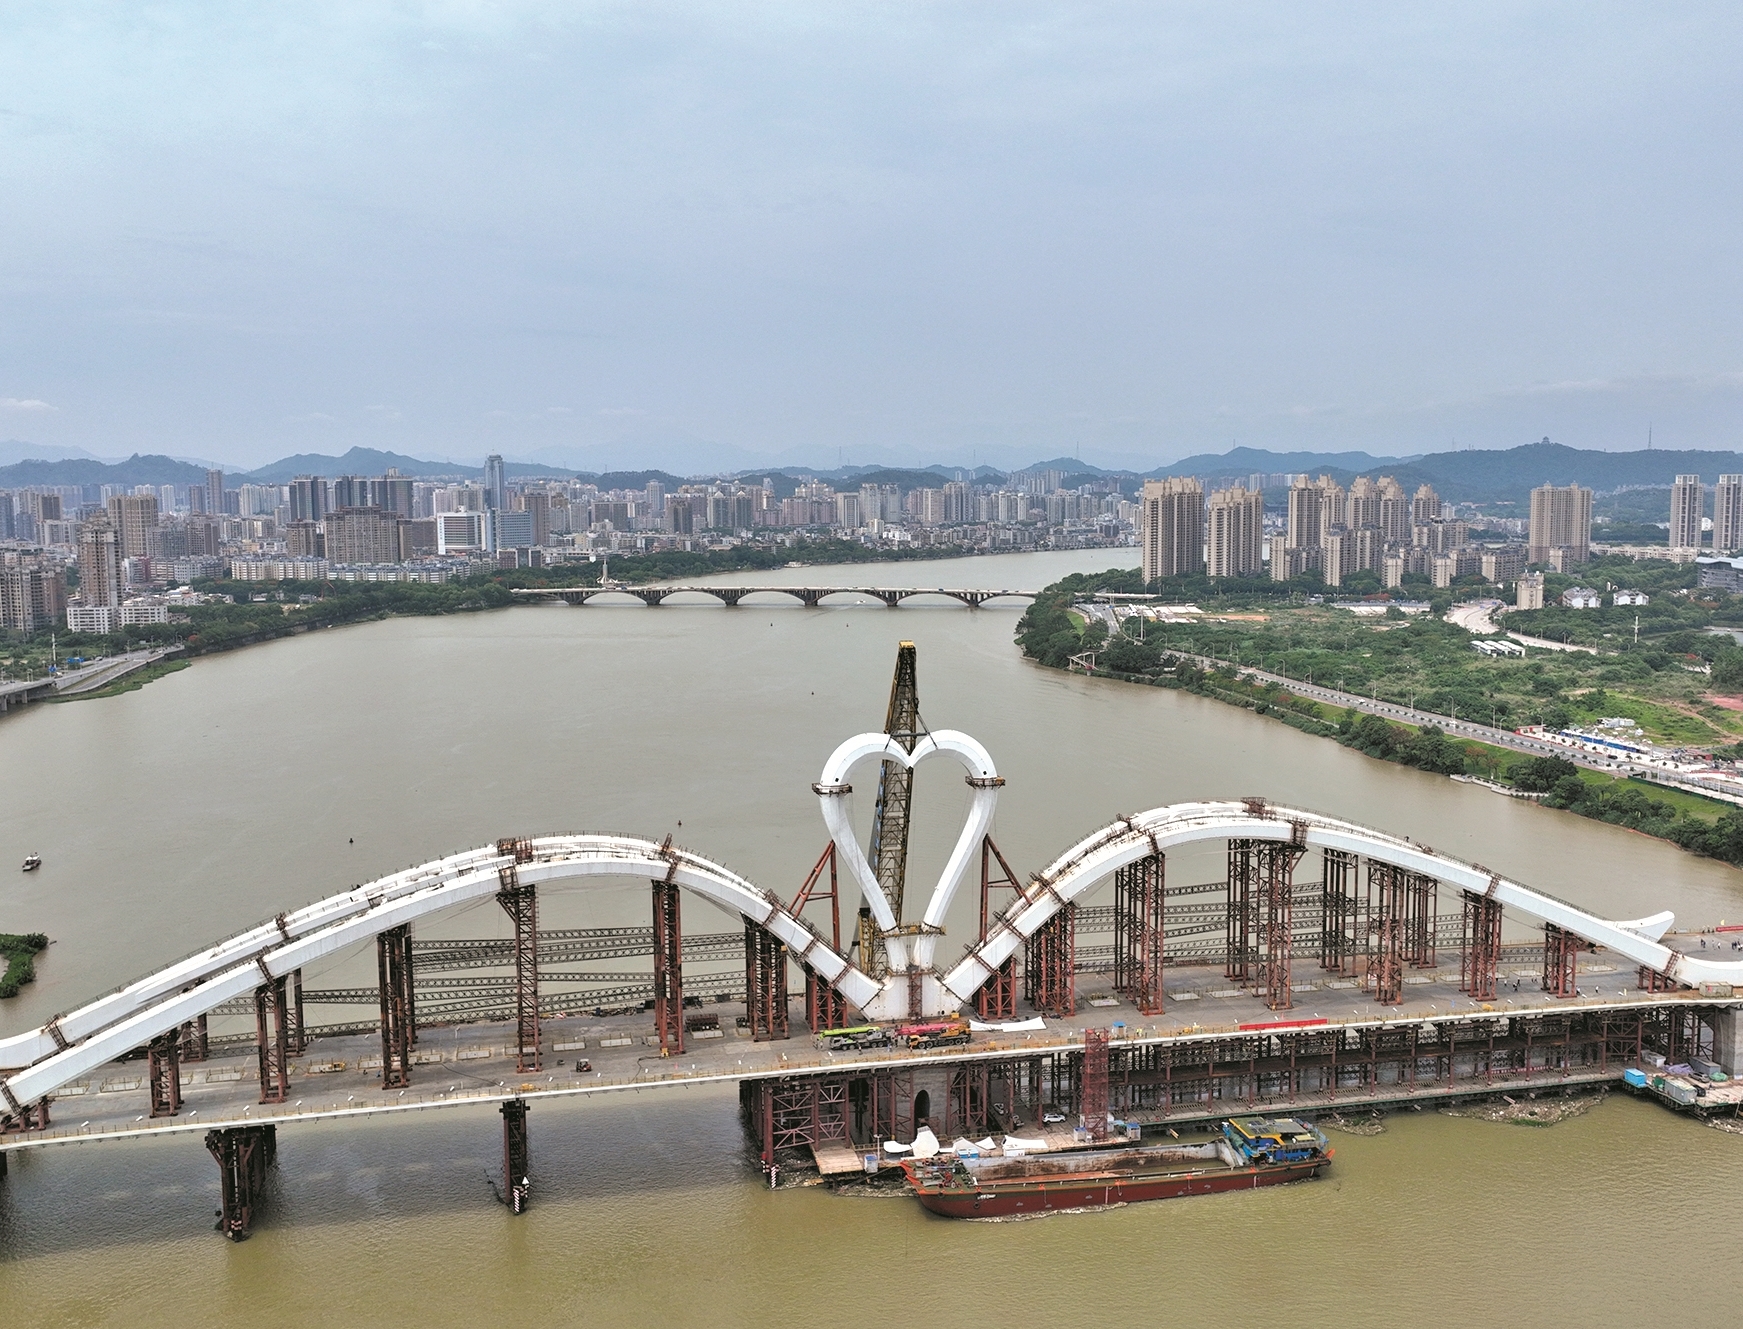 惠州鹅城大桥主桥顺利合龙 预计今年建成通车